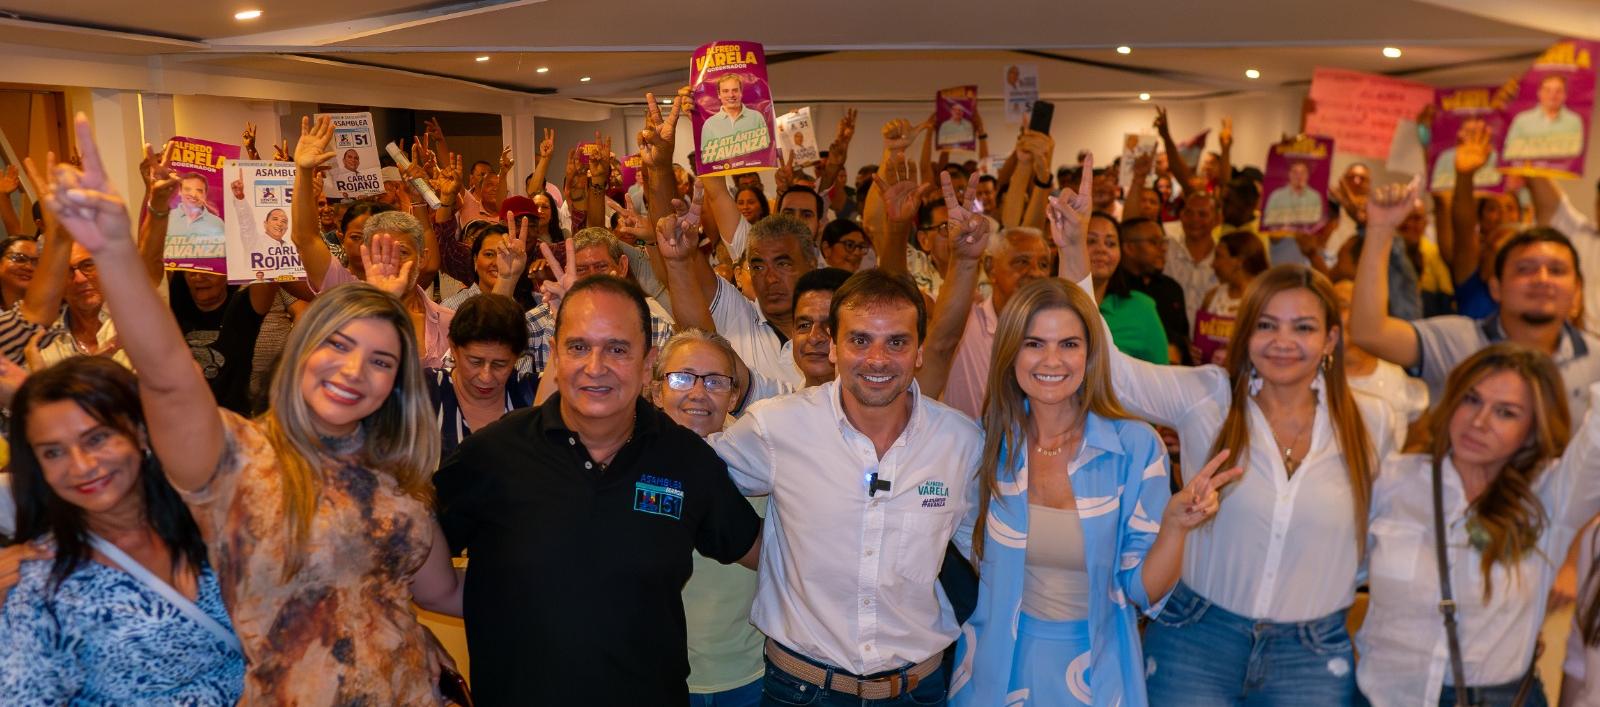 Acto de adhesión de Carlos Rojano, aspirante a la Asamblea del Atlántico por el Centro Democrático, al candidato a la Gobernación Alfredo Varela.